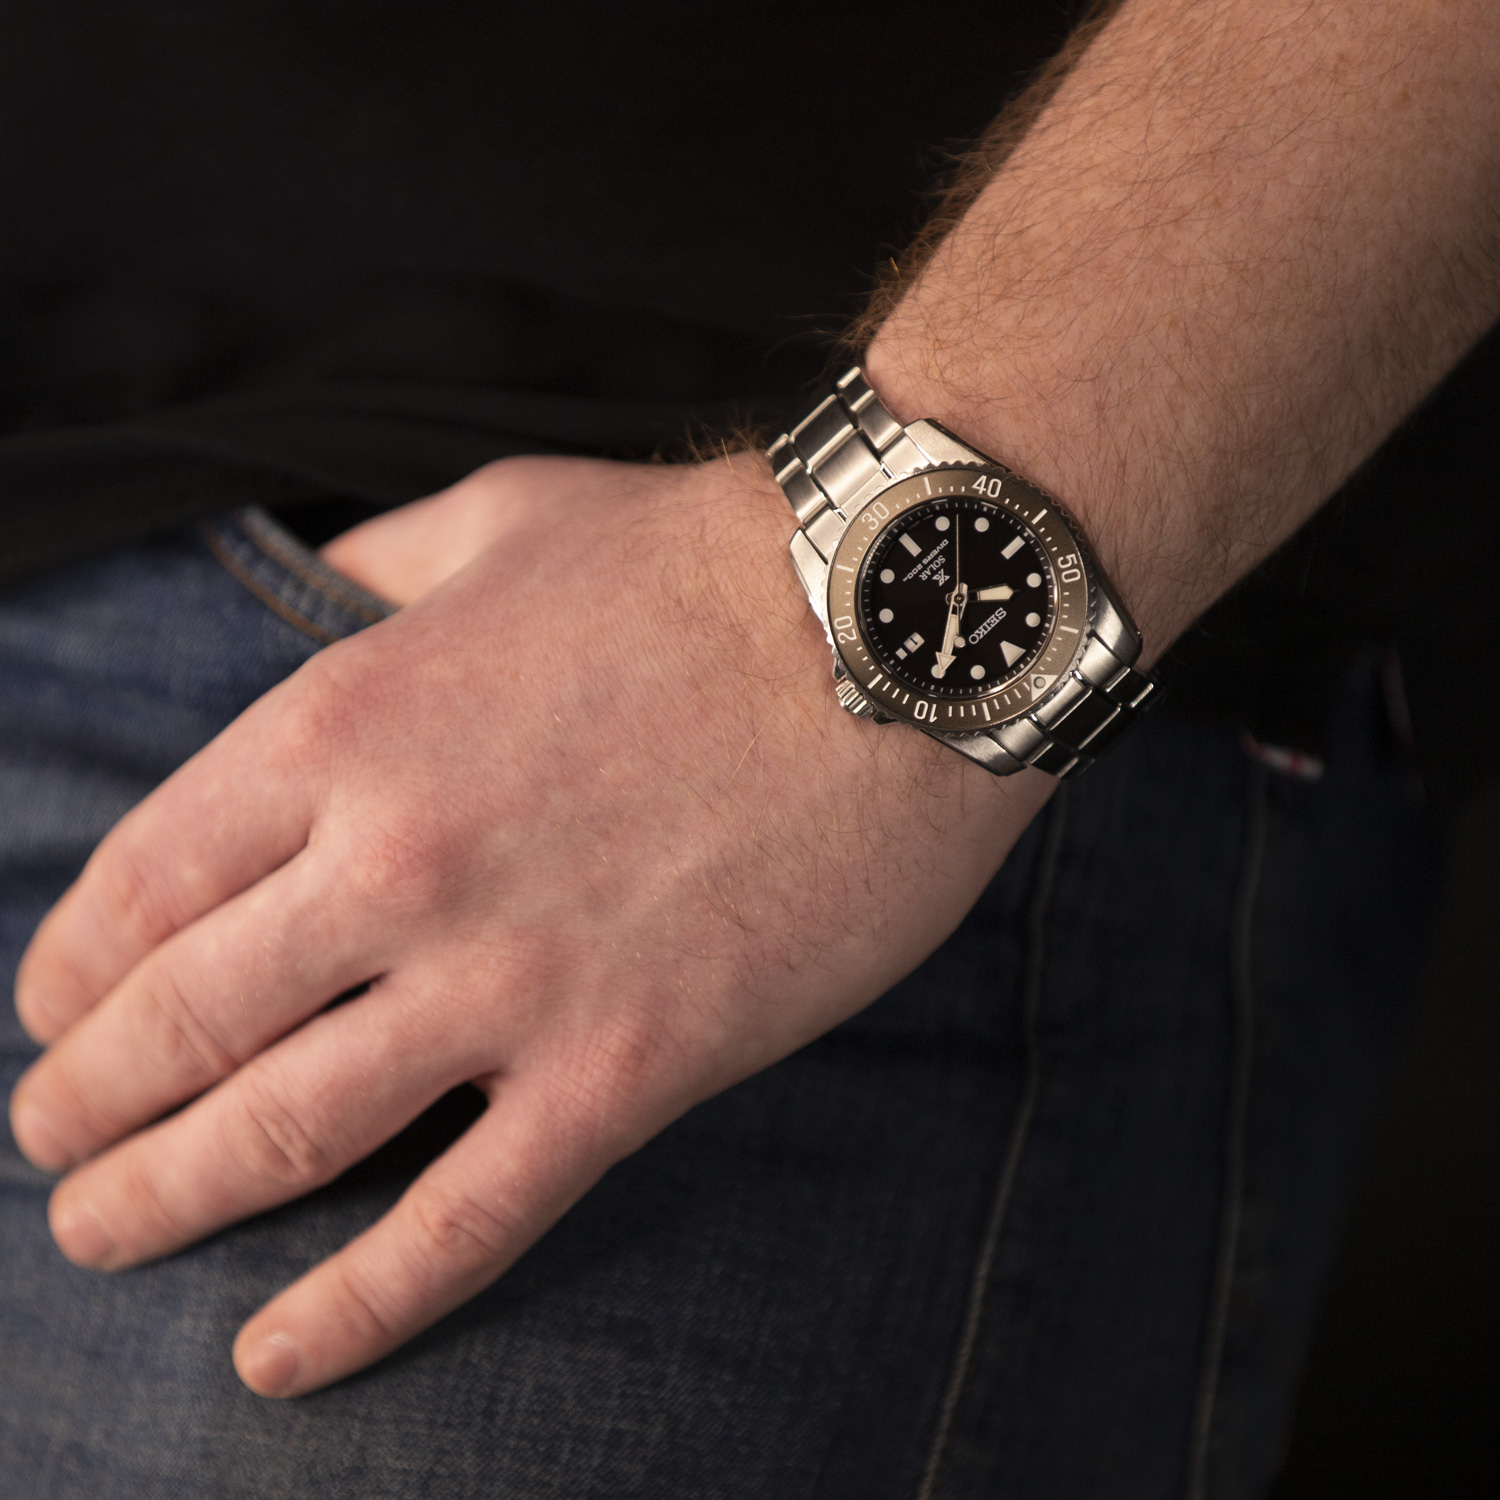 Часы Seiko SNE571P1 - купить мужские наручные часы в интернет-магазине  . Цена, фото, характеристики. - с доставкой по России.